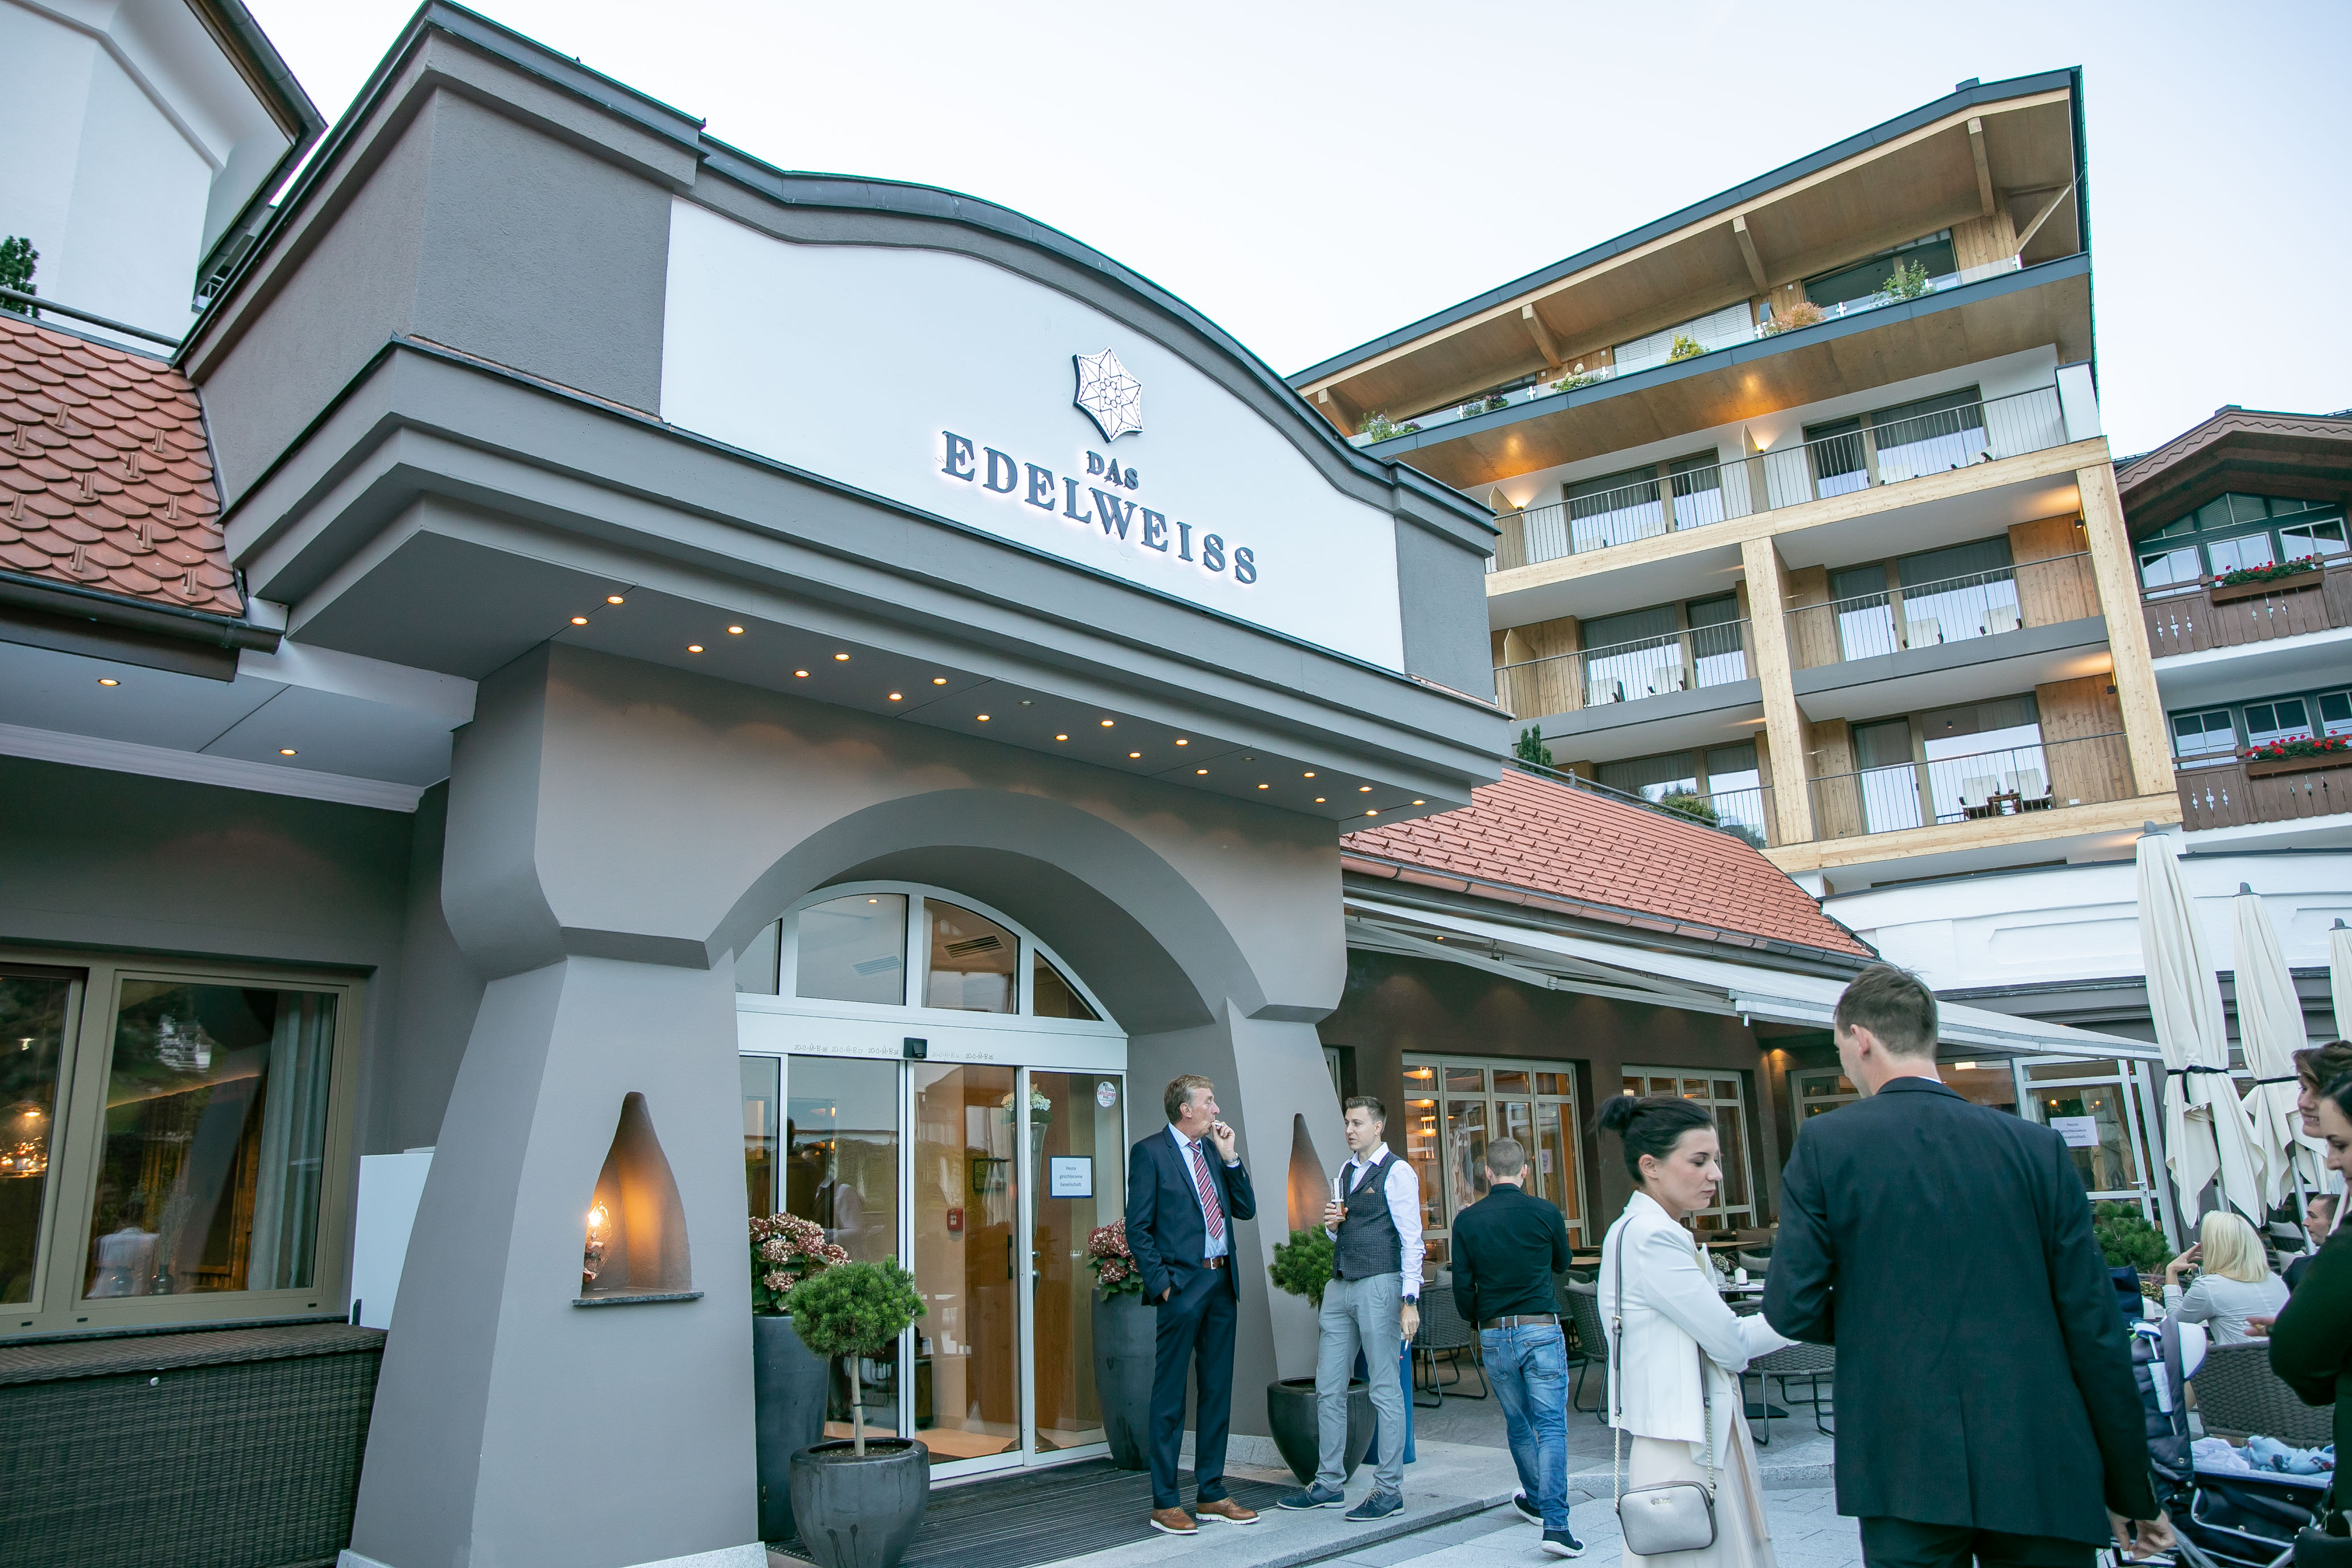 Hotel Edelweiss, Eröffnung nach Umbau, Großarl, Salzburg, 20190920, ©www.wildbild.at